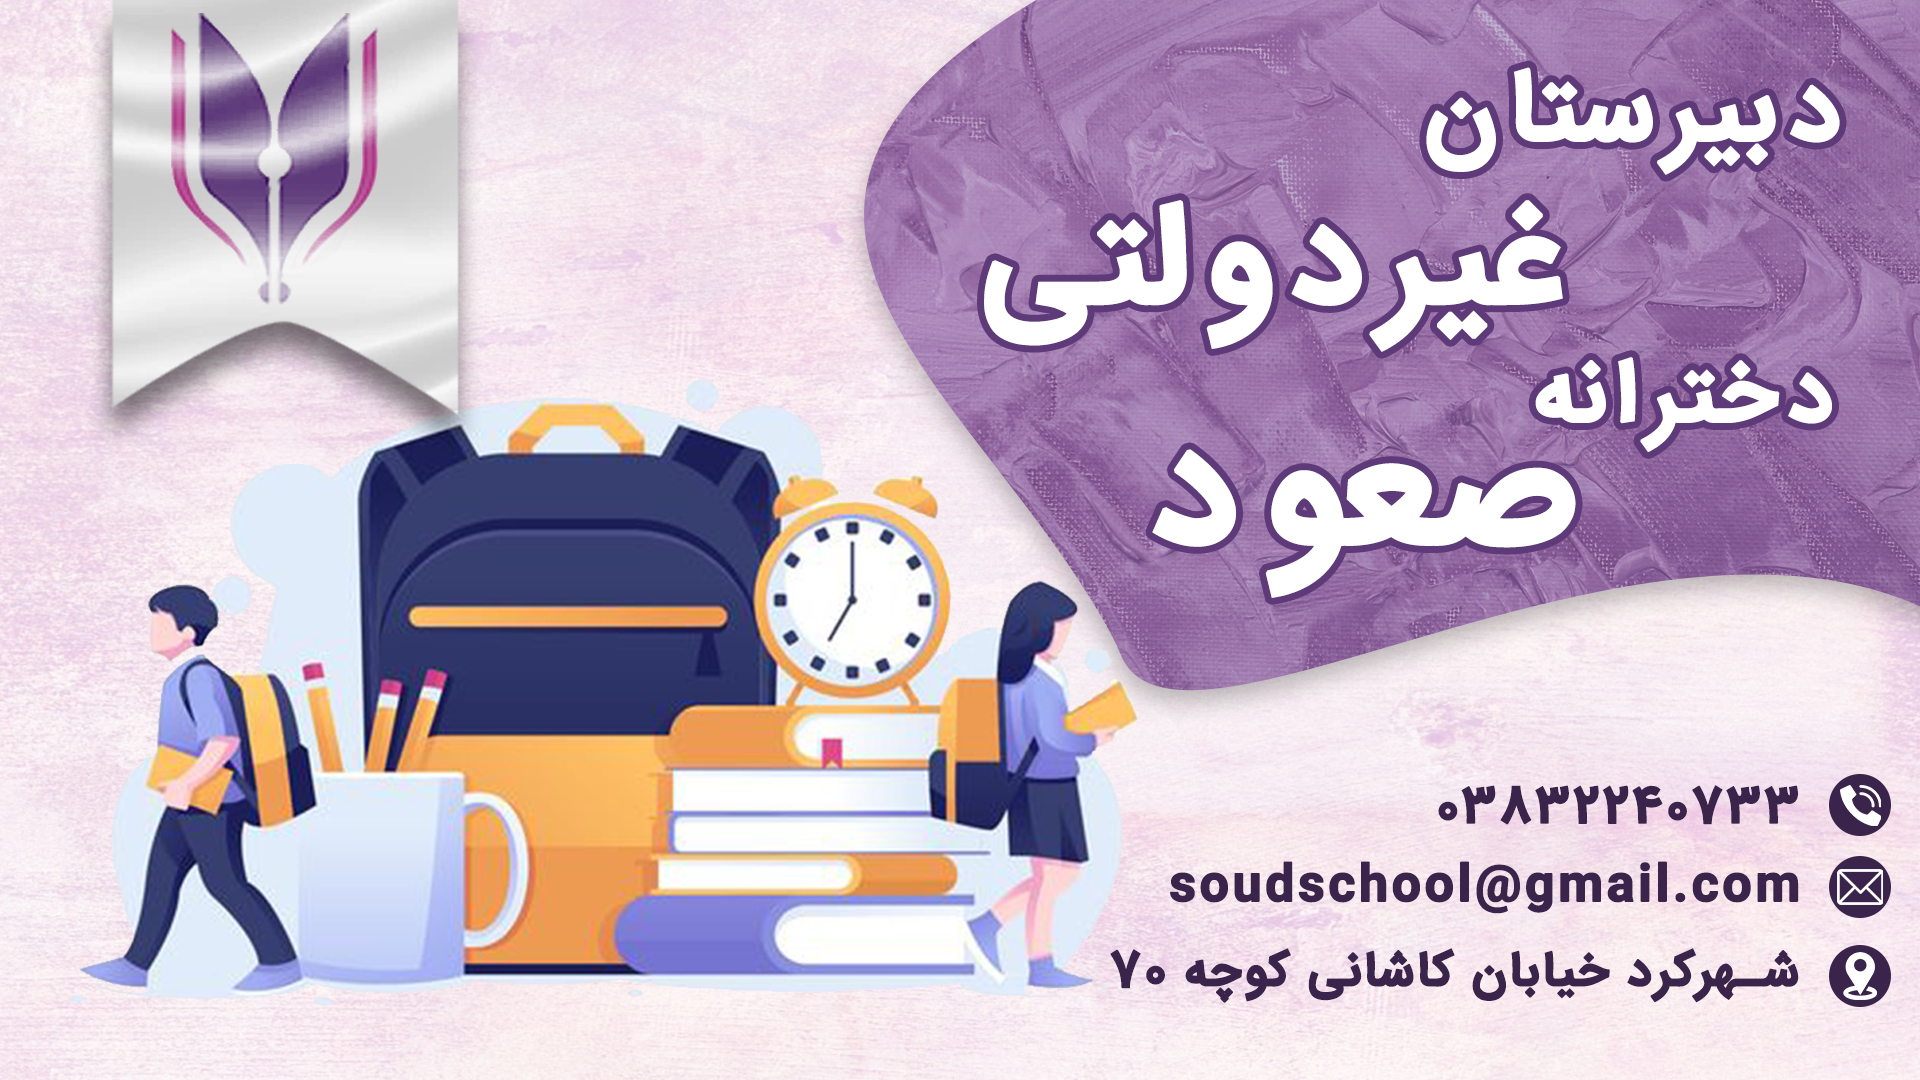 بهترین دبیرستان غیر دولتی شهر کرد